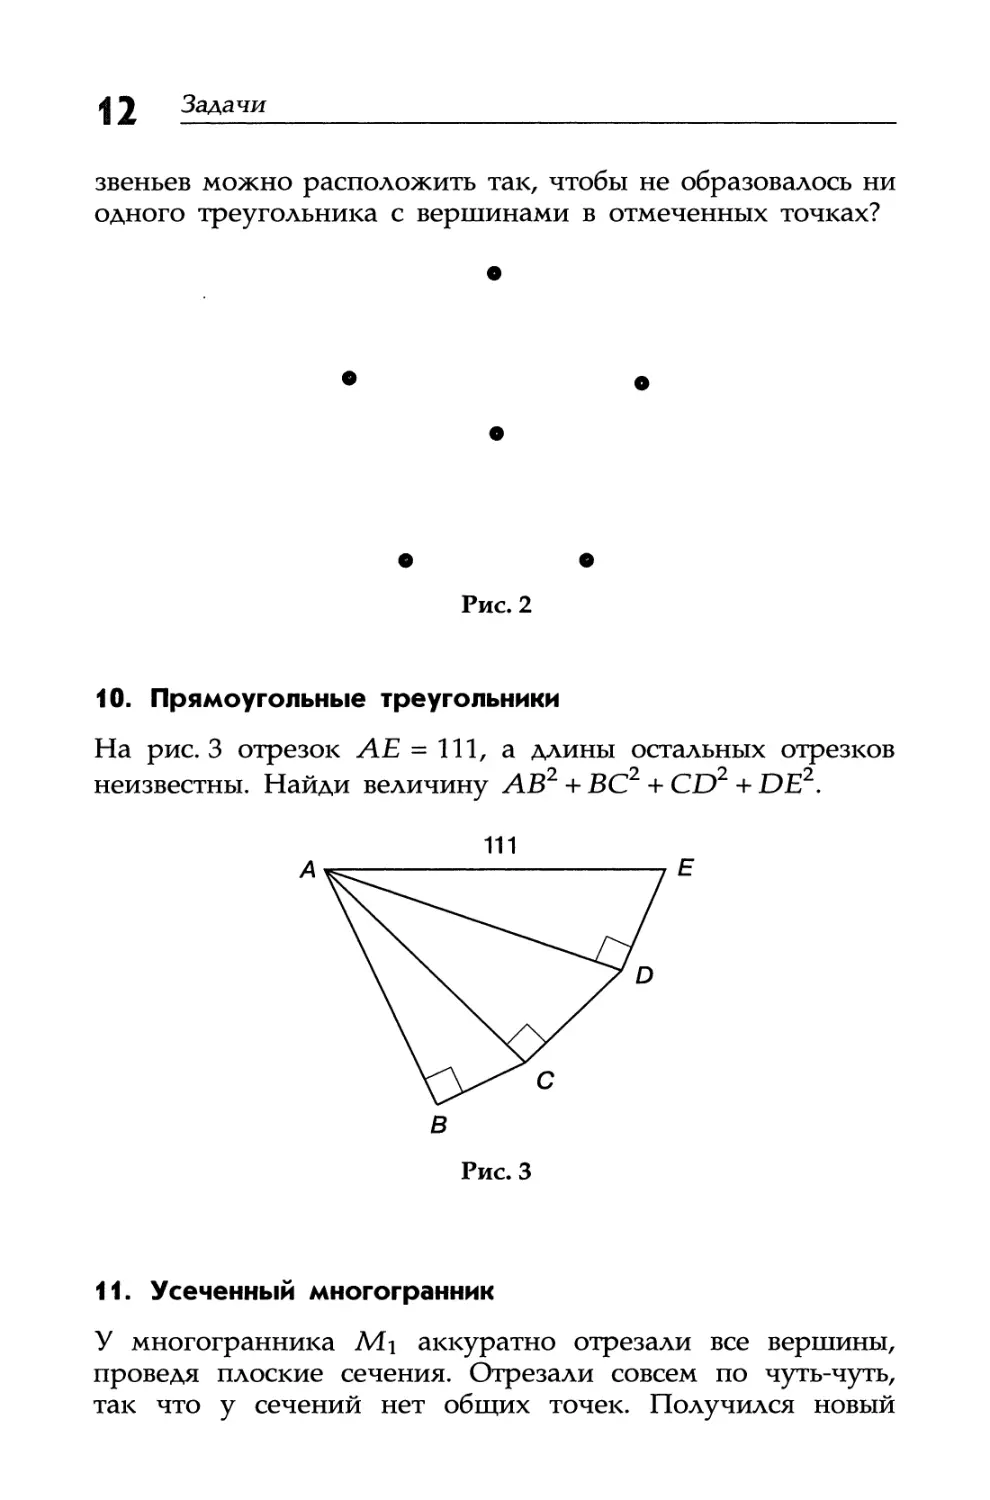 10. Прямоугольные треугольники
11. Усеченный многогранник